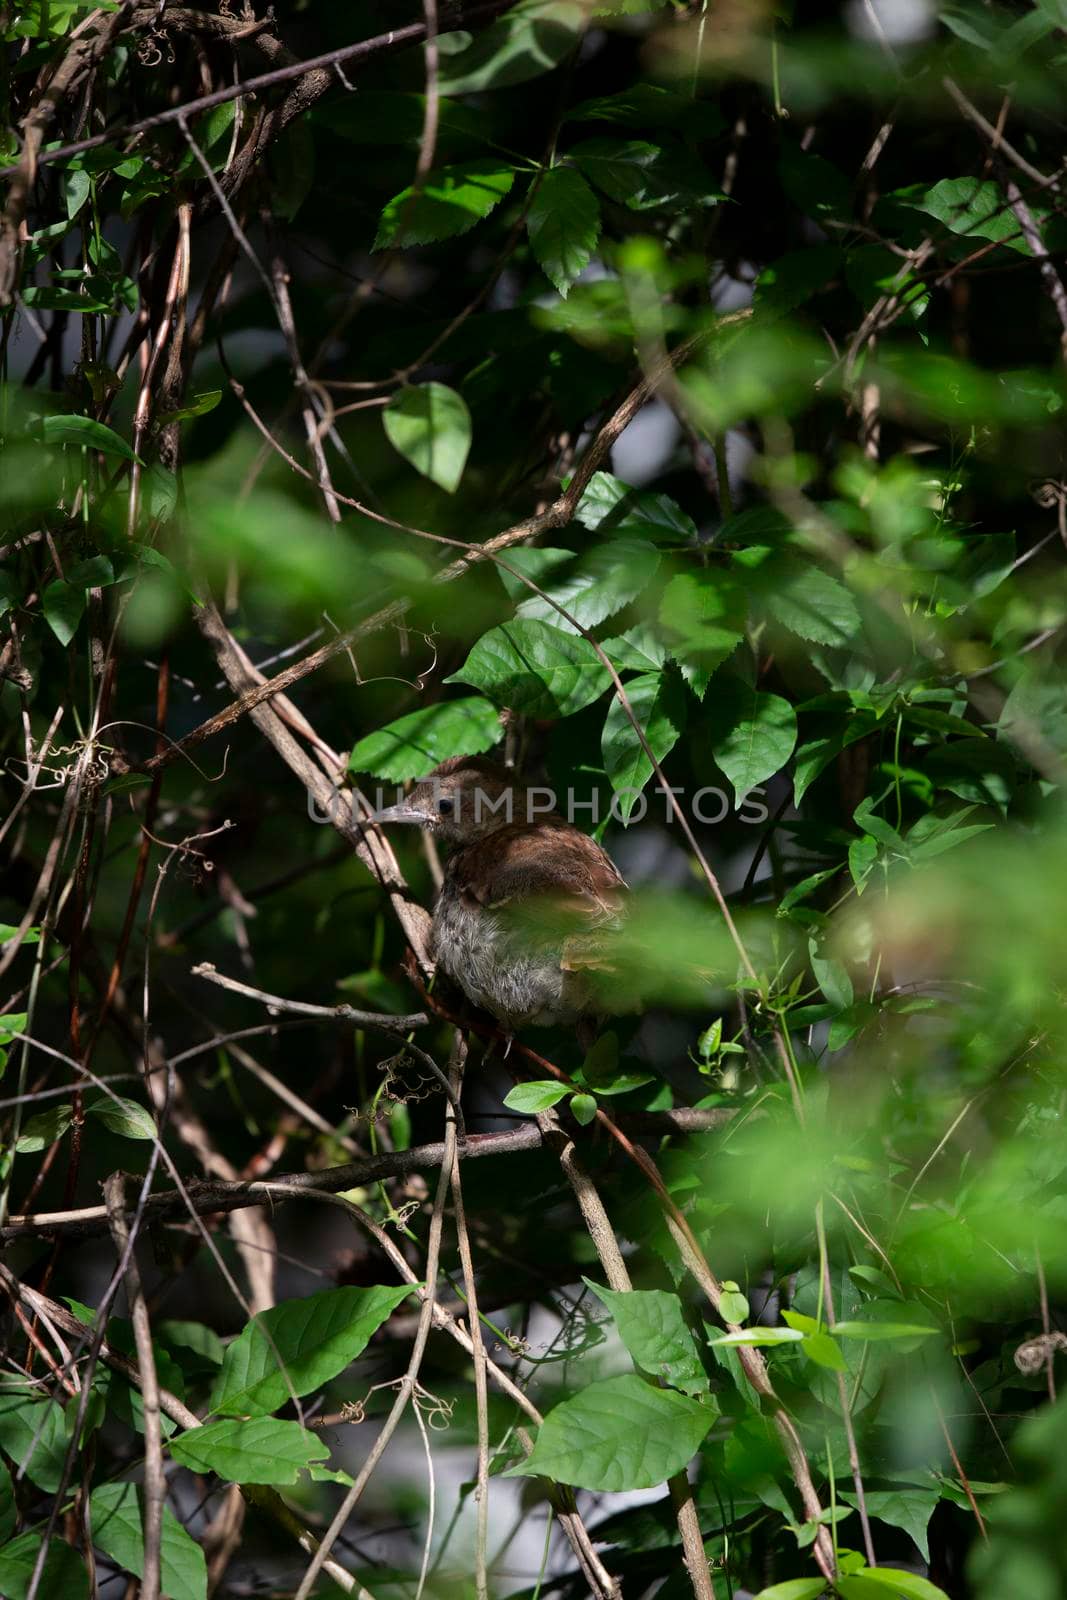 Juvenile brown thrasher bird (Toxostoma rufum) partially hidden in a bush